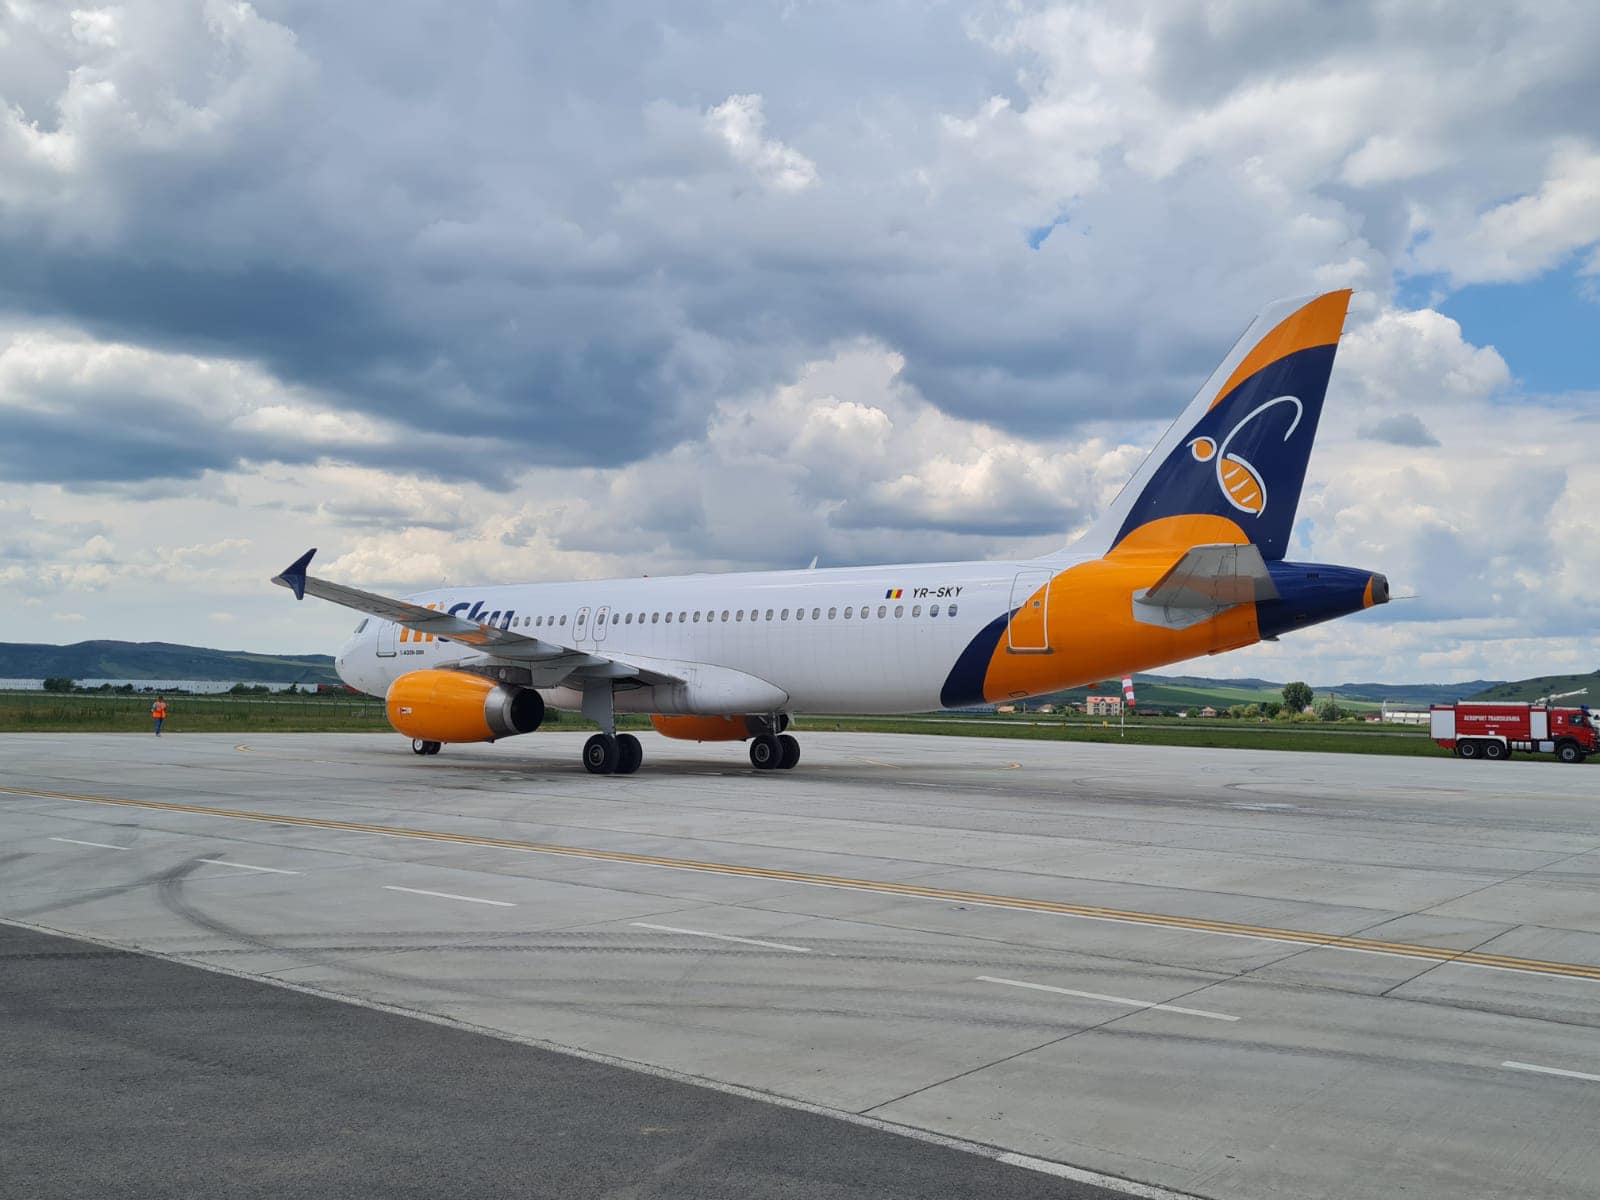 Patru zboruri directe pe ruta Cluj-Napoca-Chișinău vor fi operate de compania aeriană HiSky, de pe Aeroportul Internaţional Avram Iancu Cluj